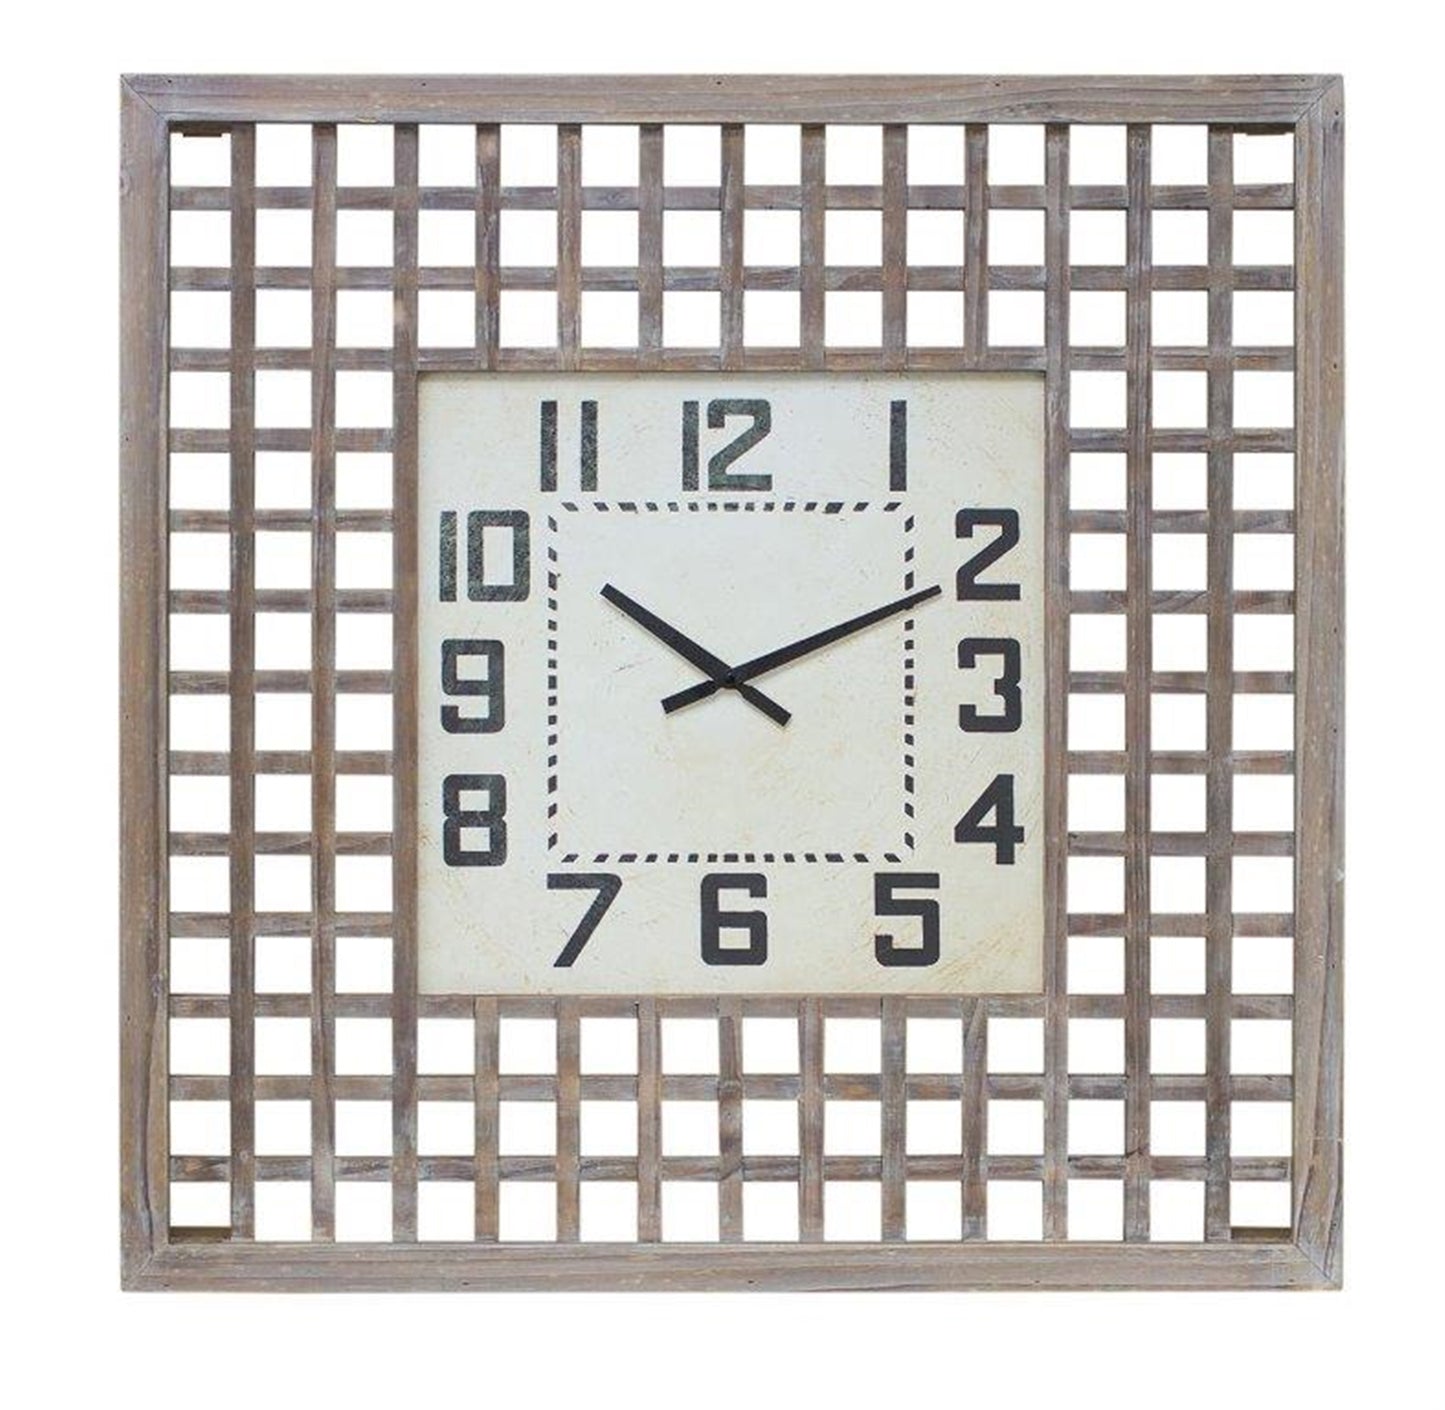 Lattice Wood Wall Clock 29.5"SQ